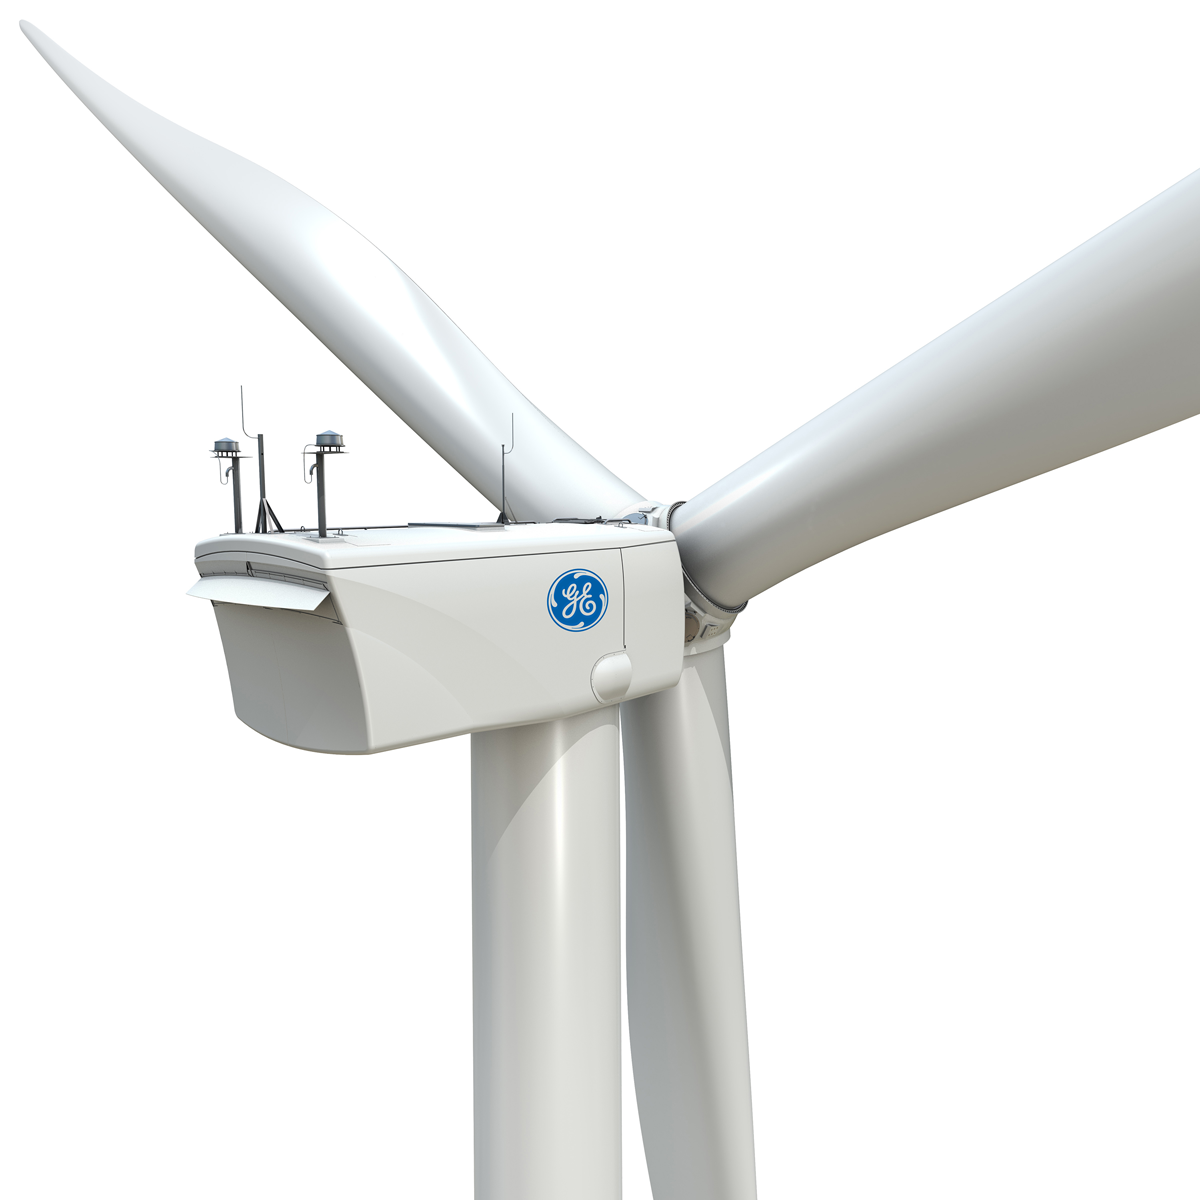 図　GE Renewable Energy社の陸上設置用風力発電設備。1台当たりの出力は3MW